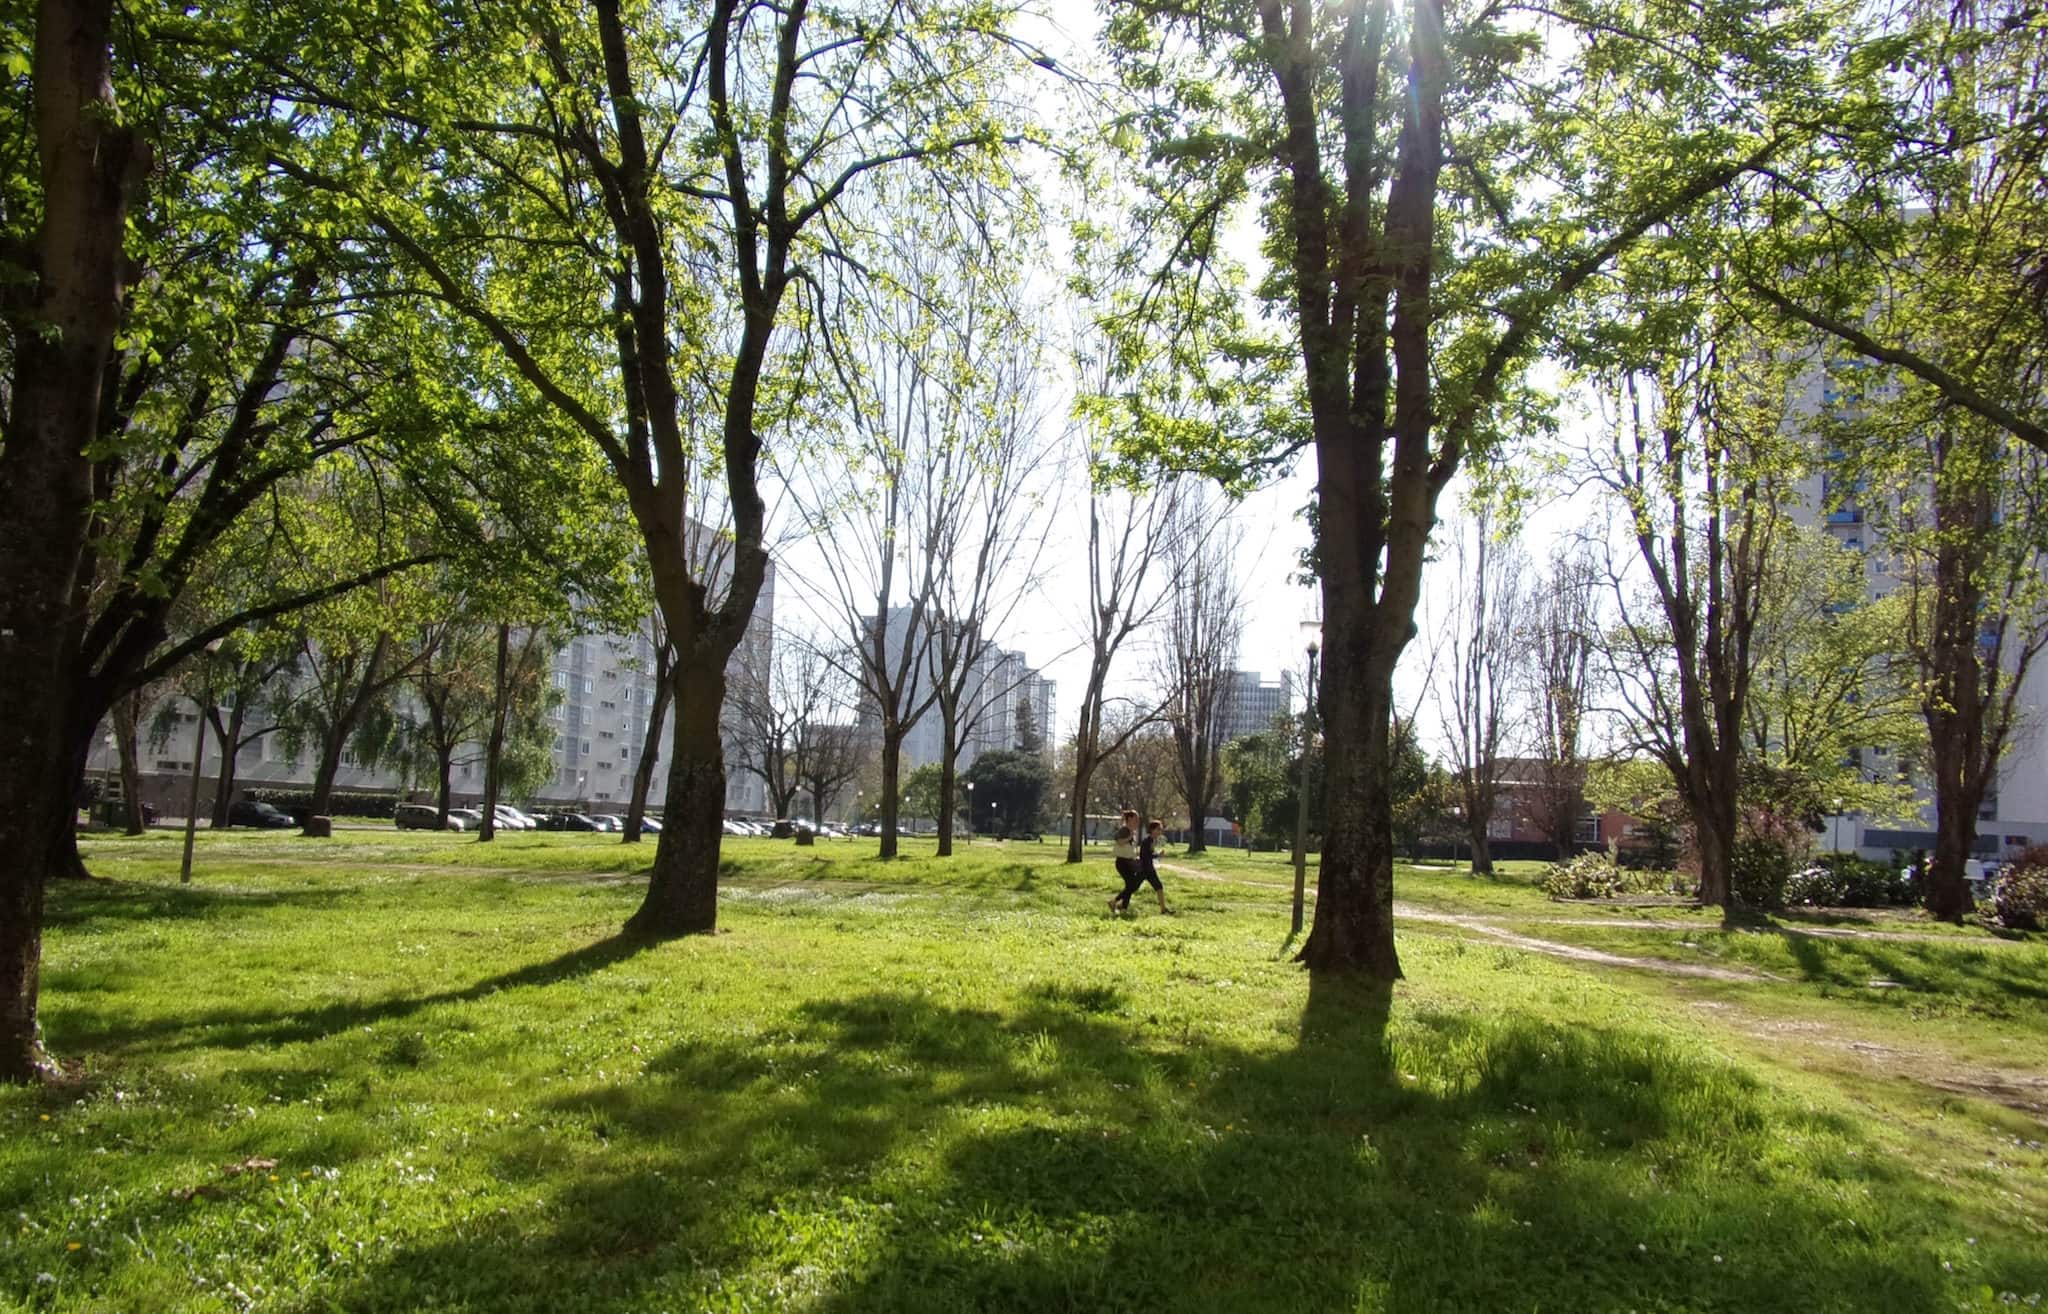 Le Grand Parc en lice pour être Territoire zéro chômeur, Bordeaux craint pour le financement